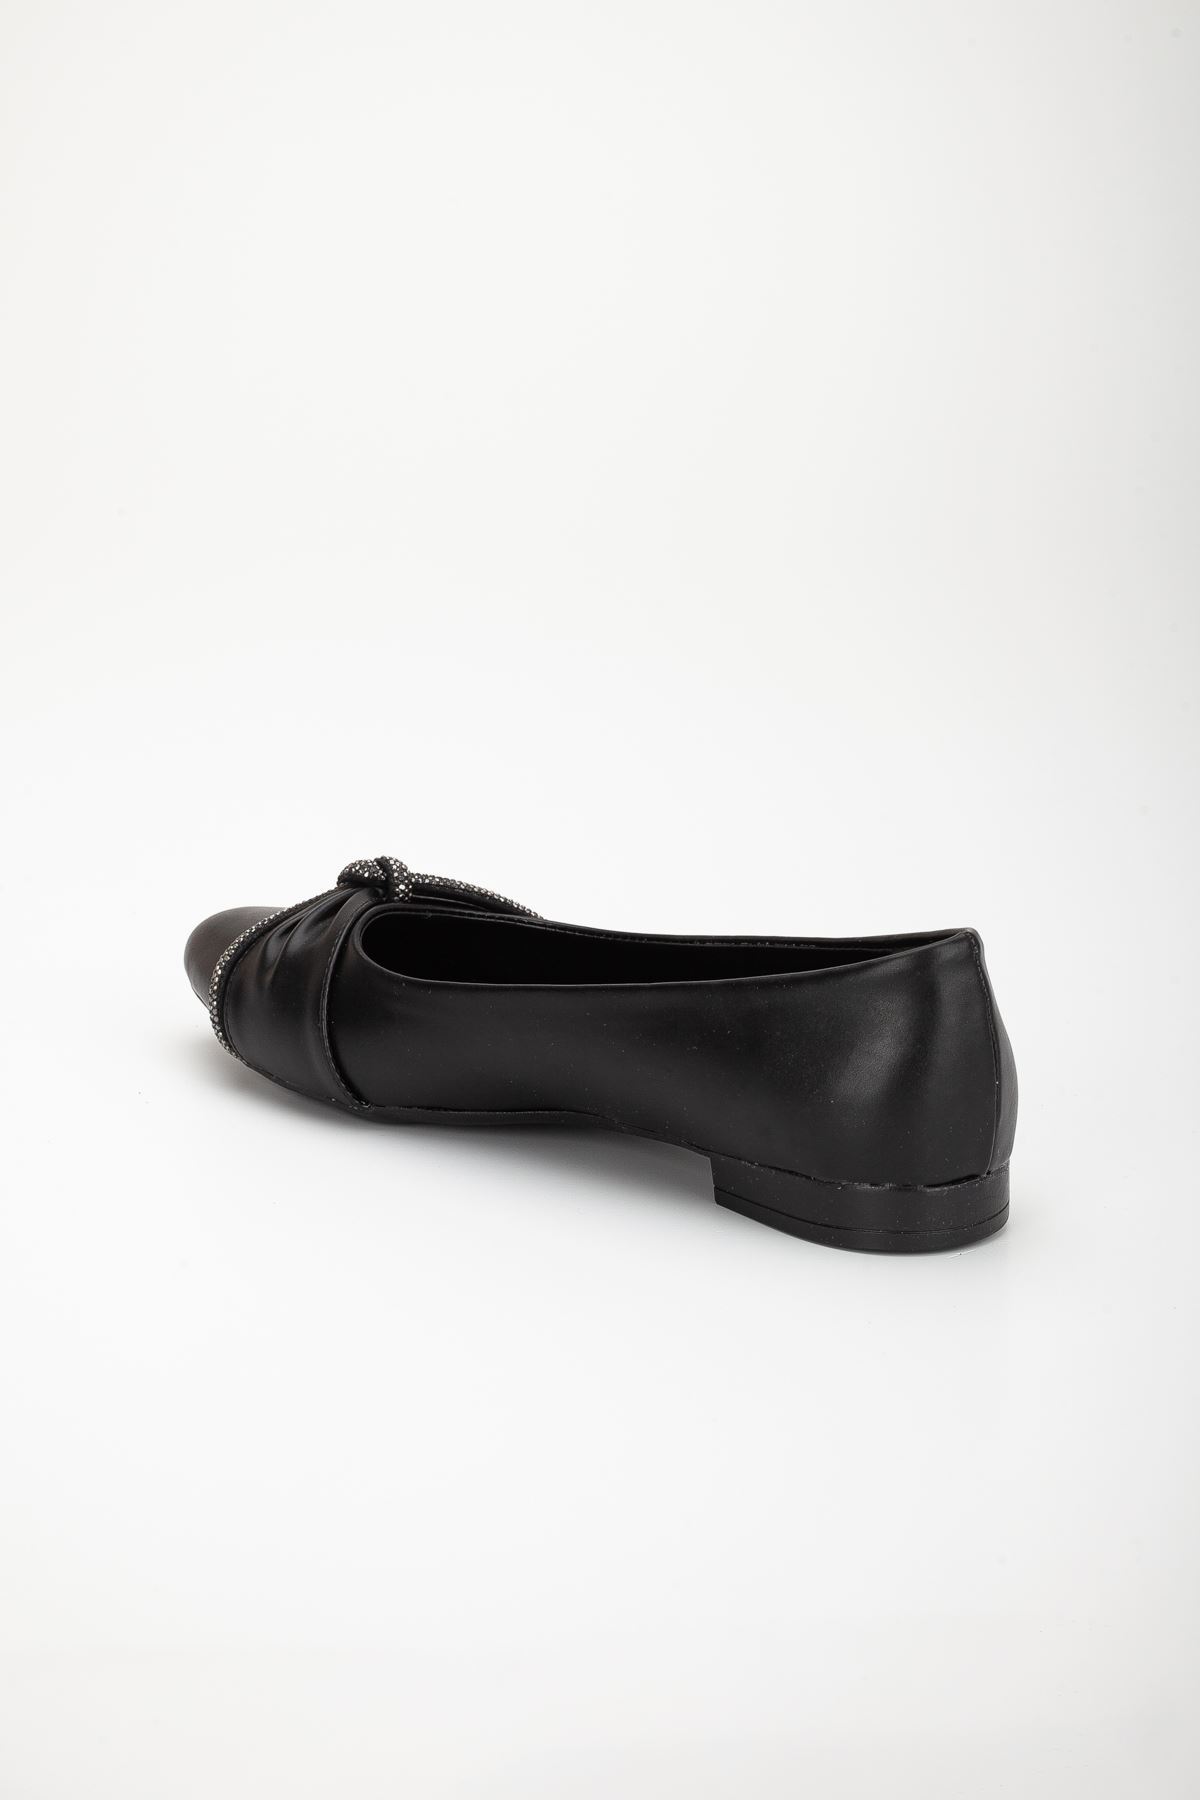 Raina Günlük Babet Ayakkabı Siyah Cilt